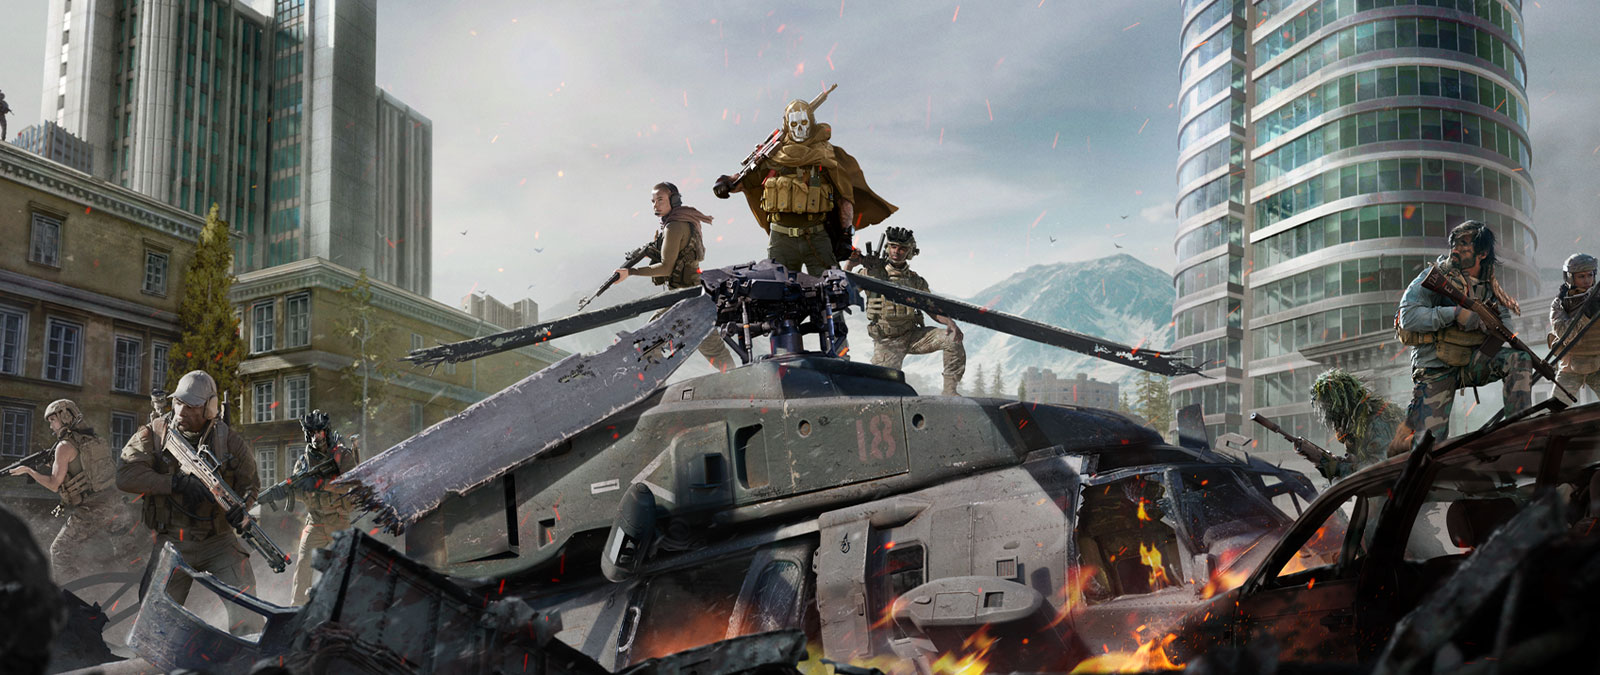 Ο χαρακτήρας Ghost από το Call of Duty: Modern Warfare με μάσκα κρανίου και εξοπλισμό απόκρυψης πάνω από ένα ελικόπτερο που έχει συντριβεί με διάφορους άλλους χαρακτήρες